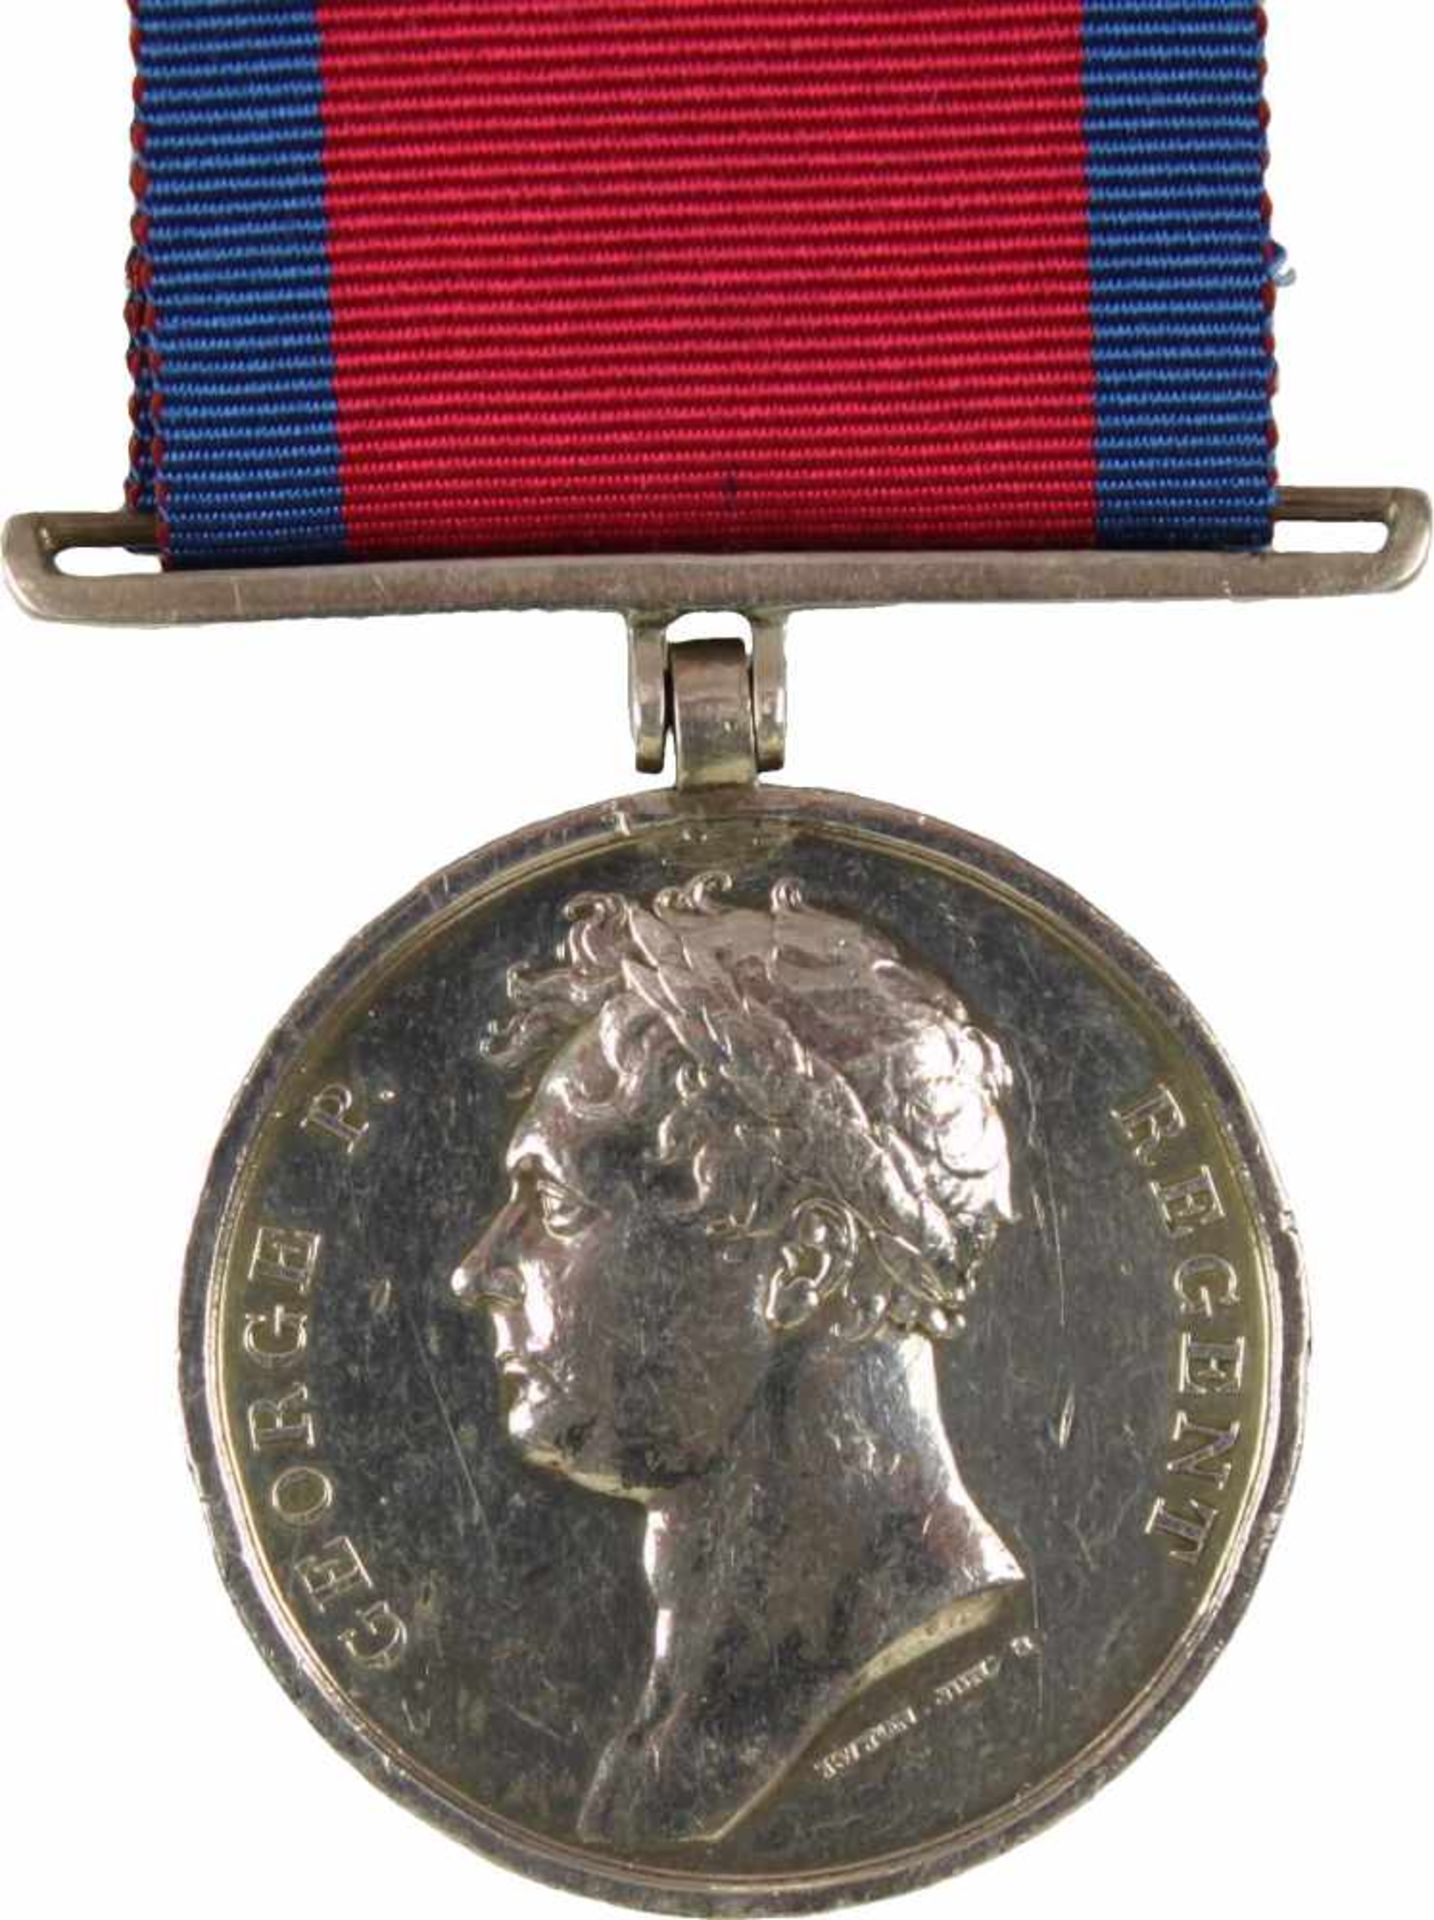 Königreich Großbritannien, Waterloo-Medaille, 1815. Medaille Silber, angelötete Silberöse mit